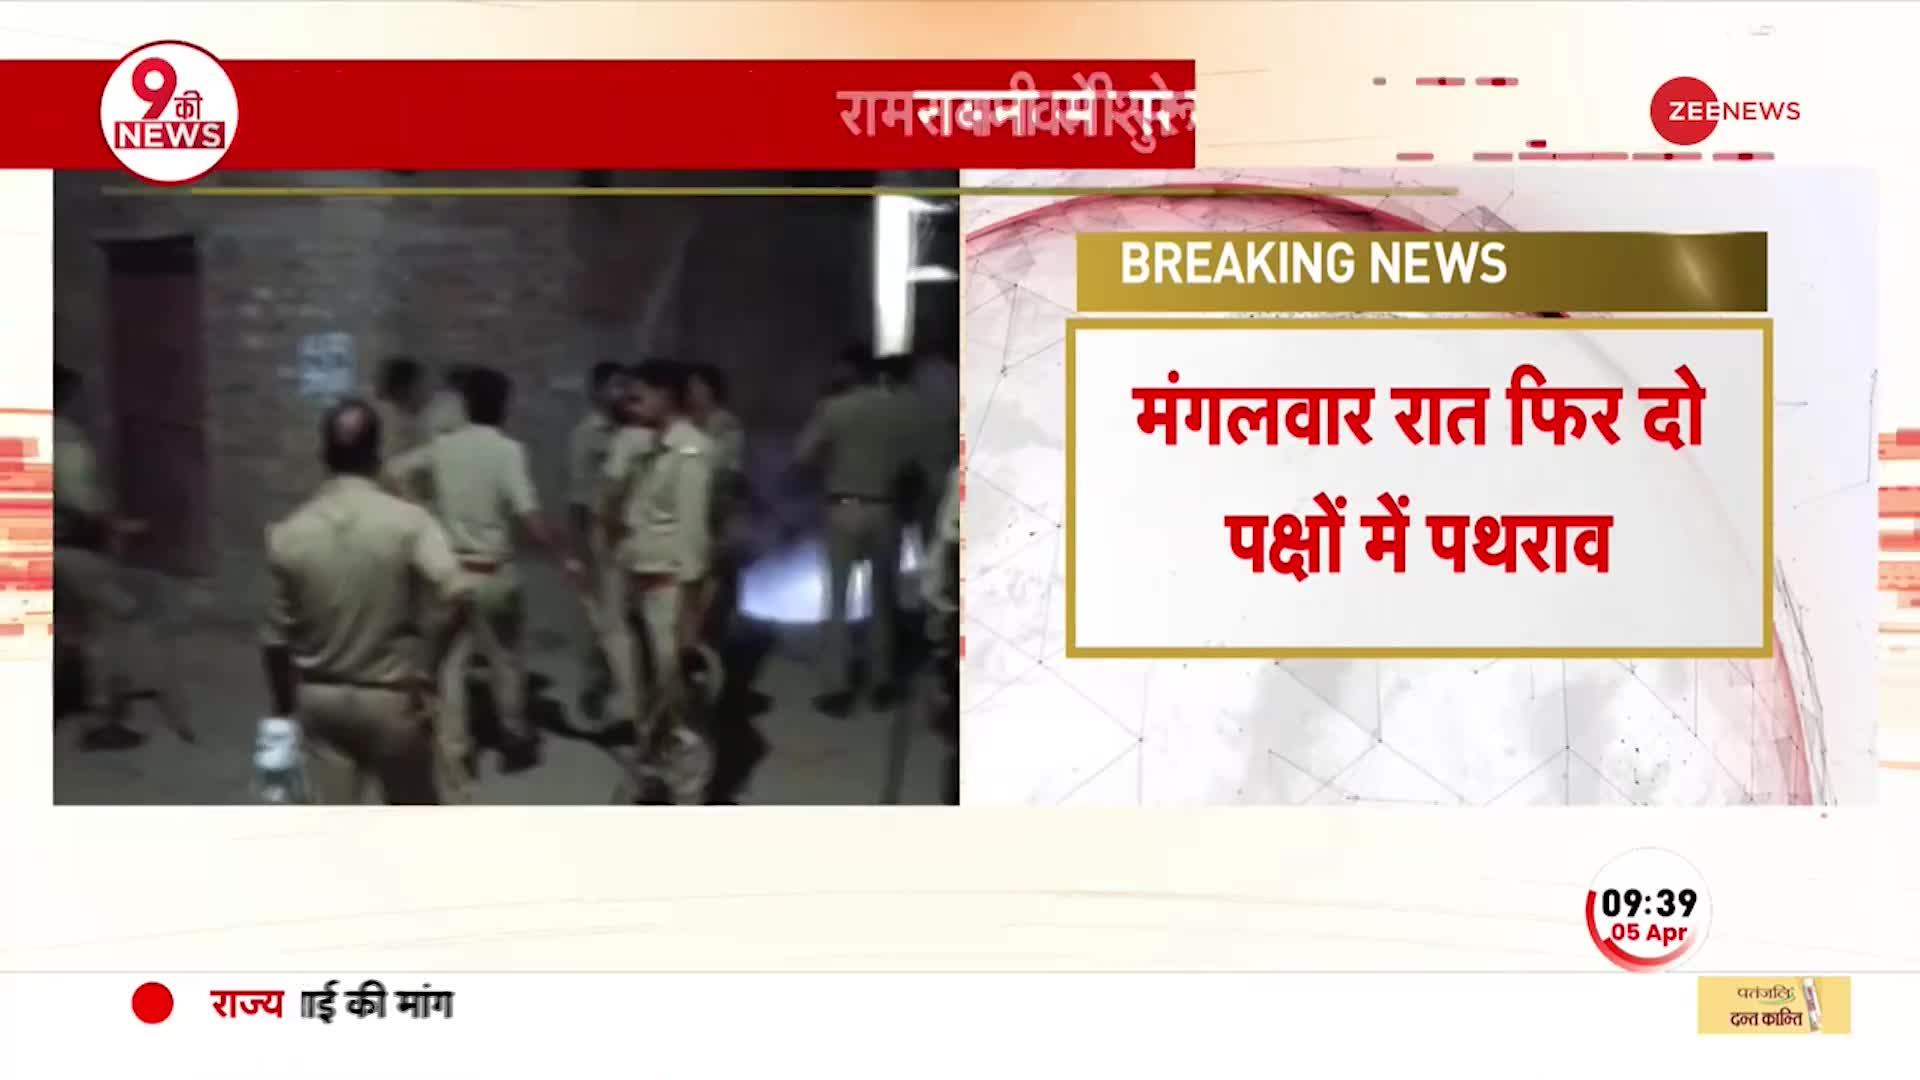 Breaking News: UP के उन्नाव में दो गुटों में हिंसक झड़प, श्रीराम यात्रा के दौरान हुआ था विवाद